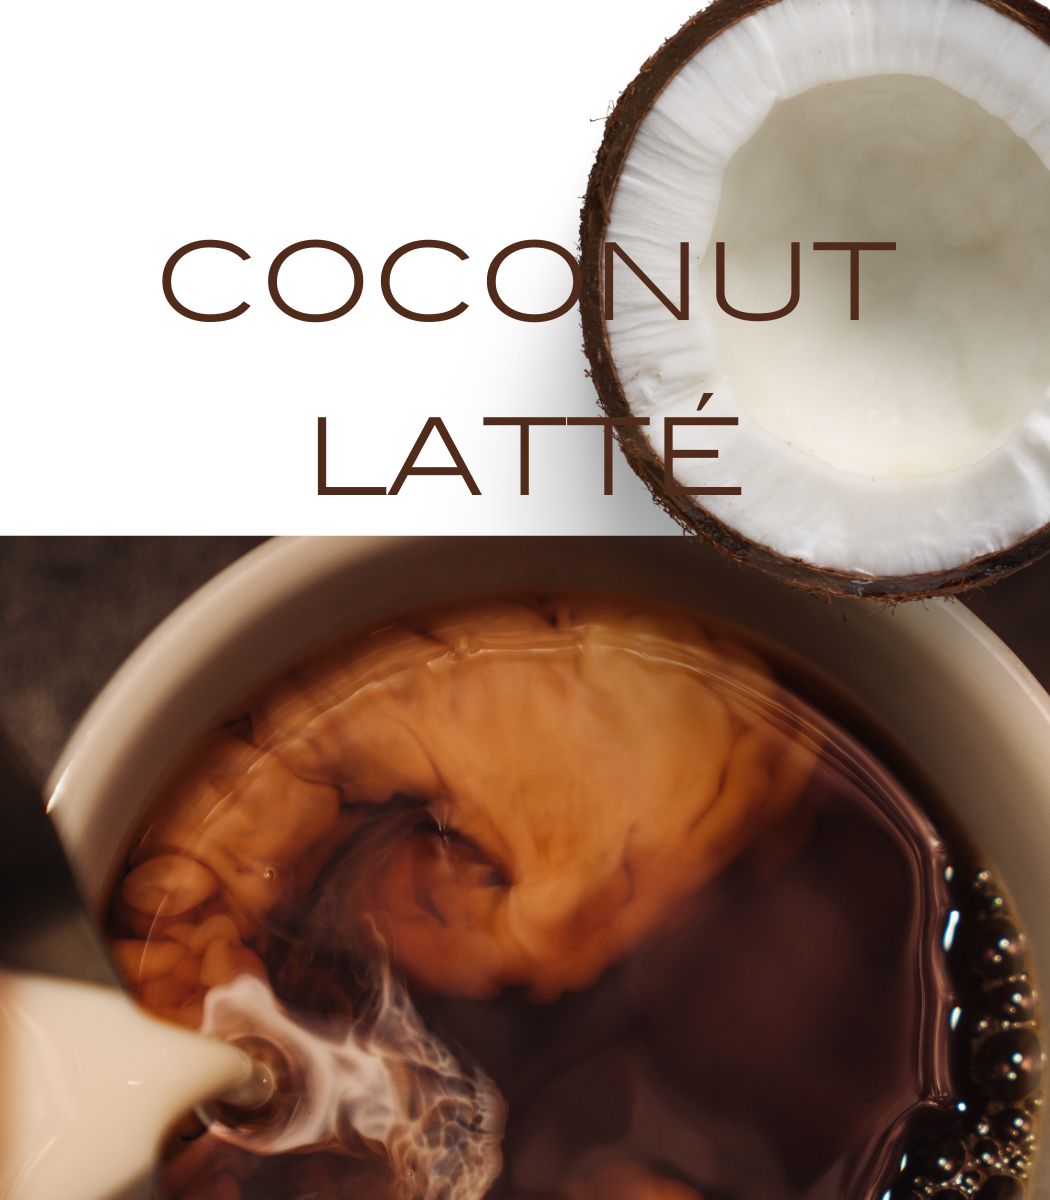 COCONUT CAFÉ LATTE